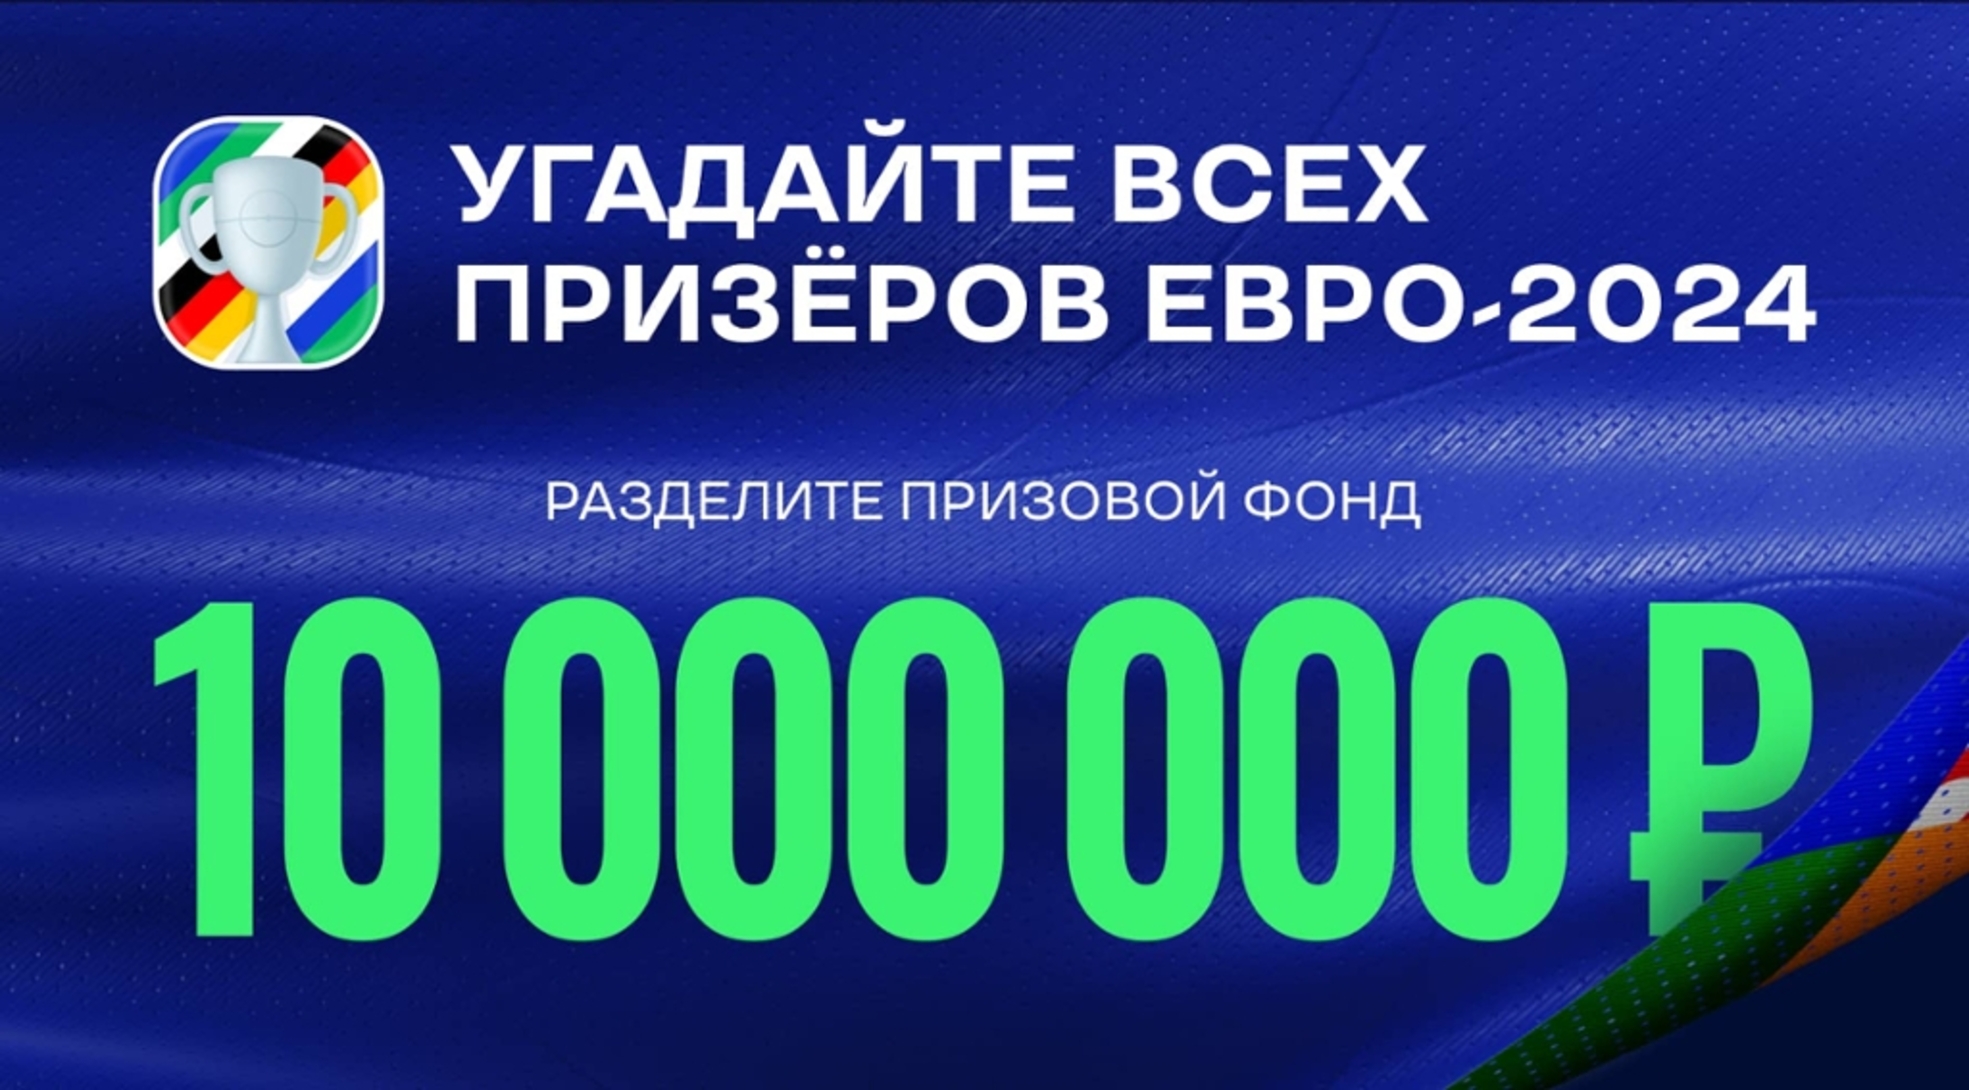 Фрибет в Лиге Ставок: до 5 млн рублей за верные прогнозы